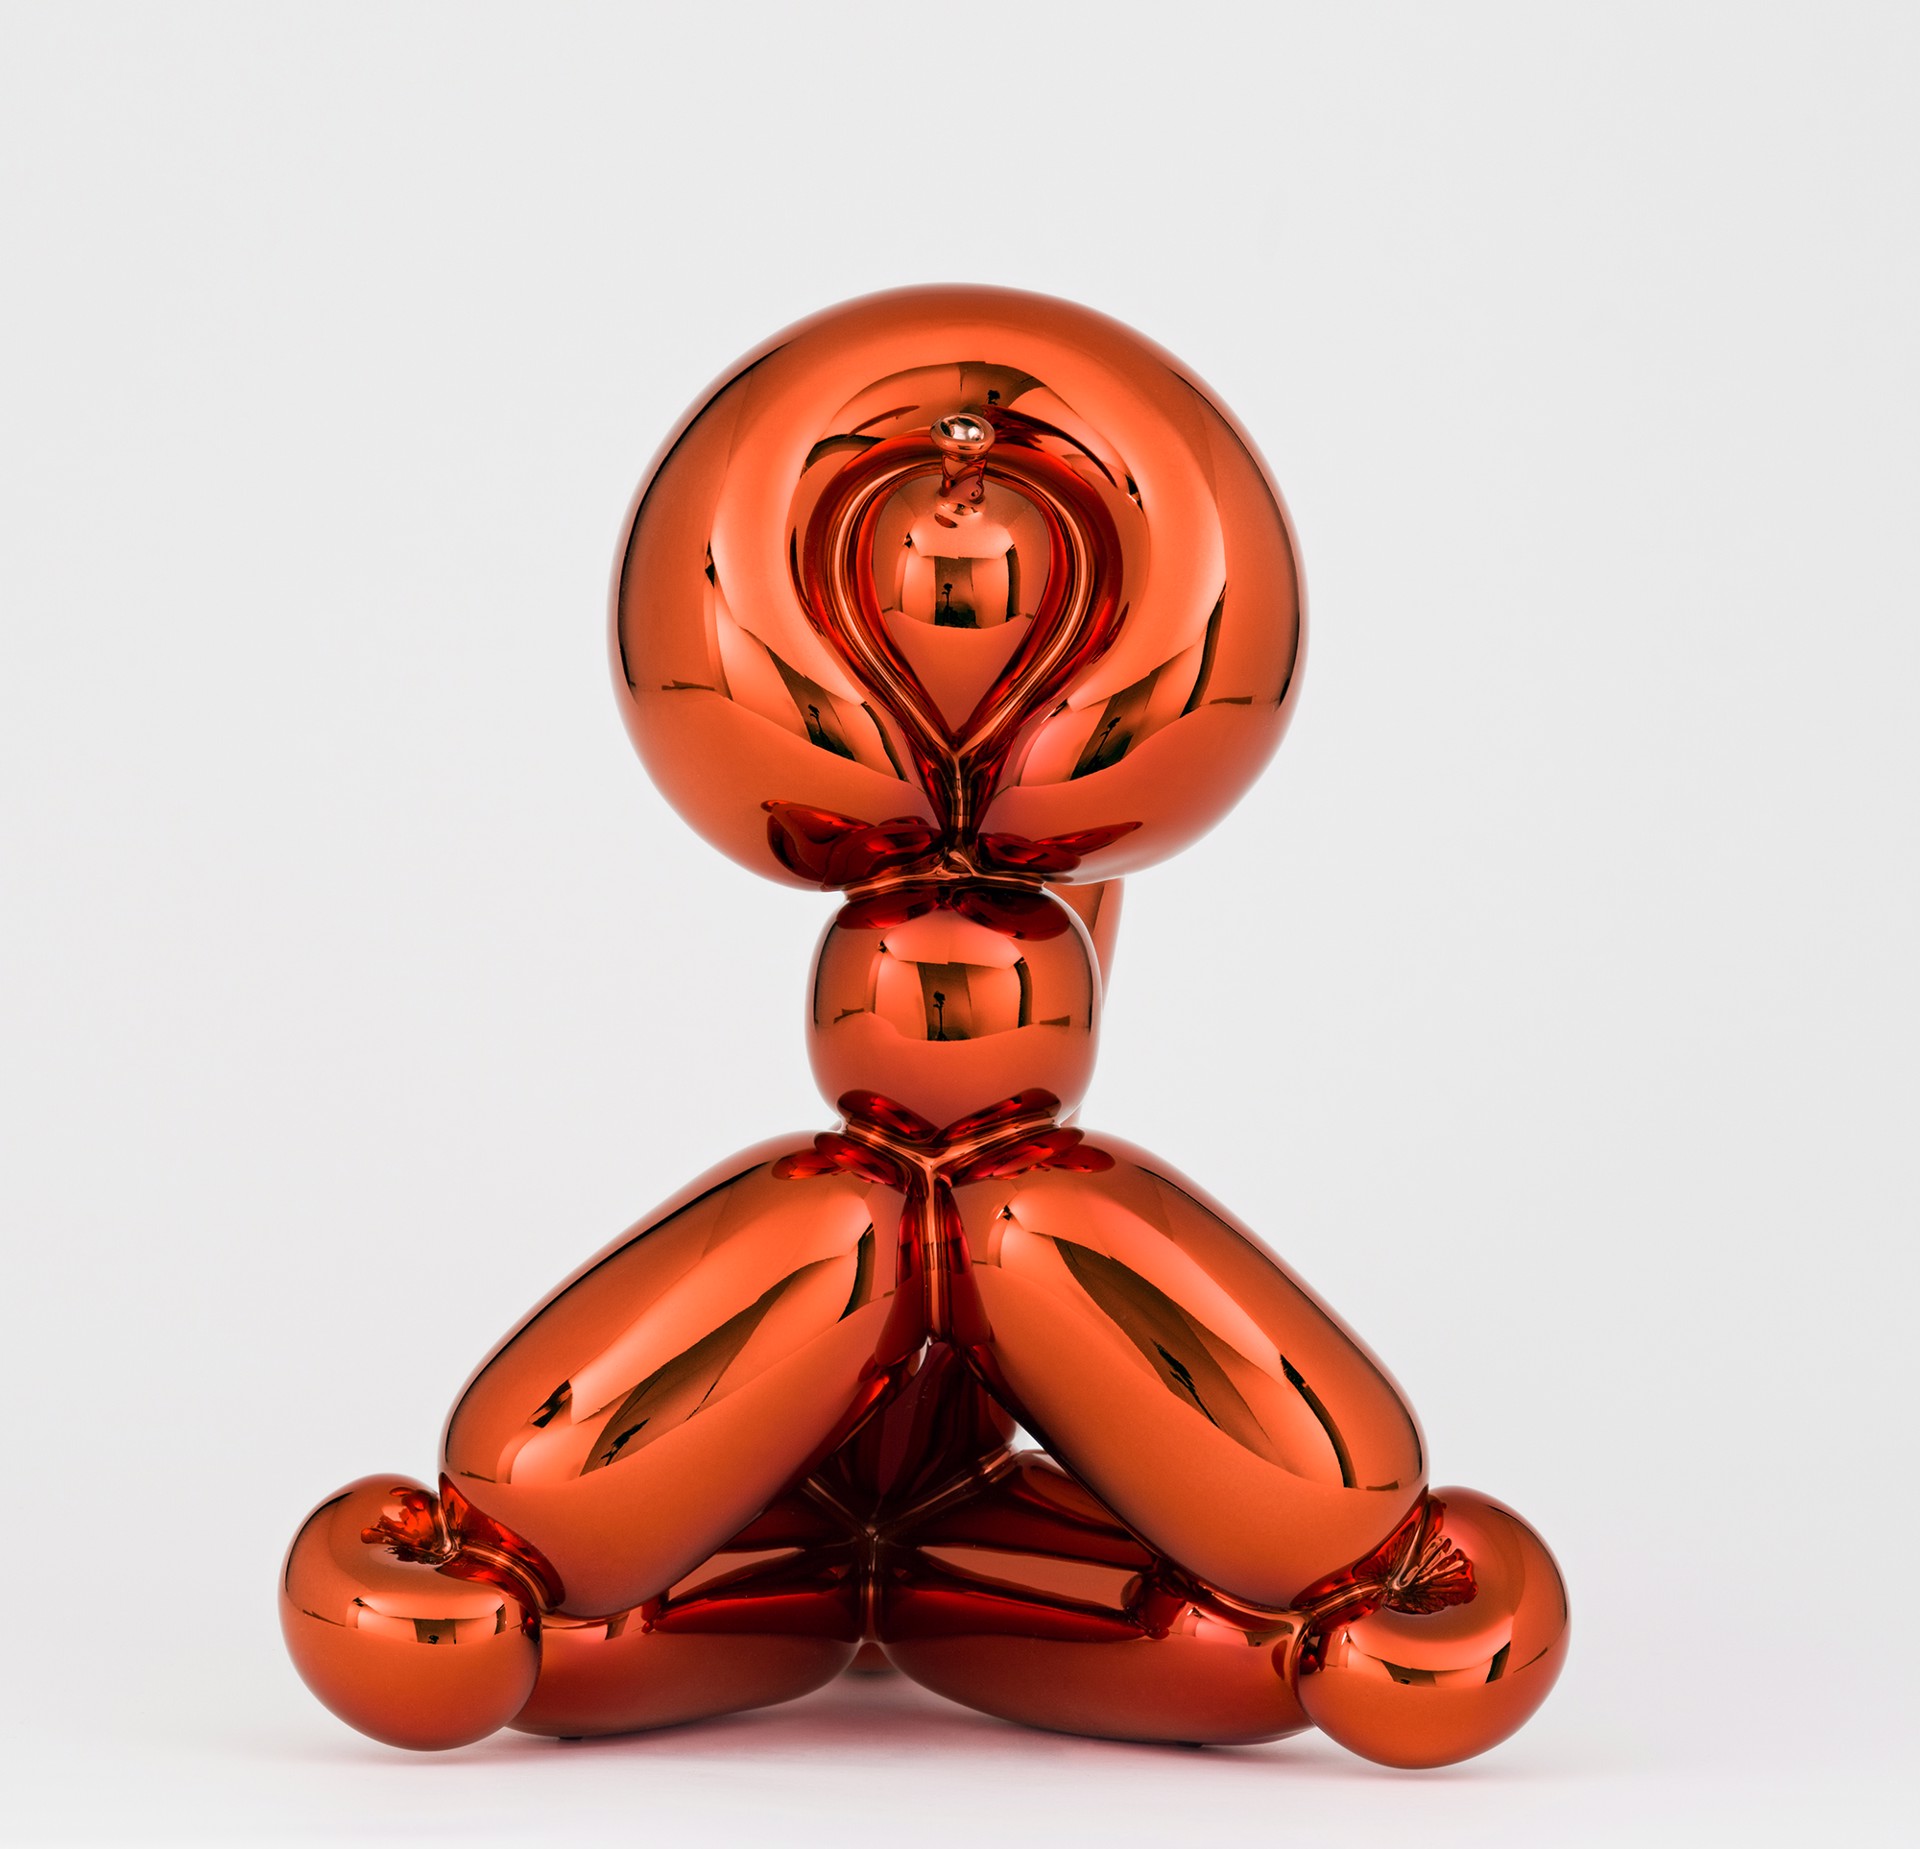 Jeff Koons, Balloon Swan, Rabbit, and Monkey, 2019, Sculpture